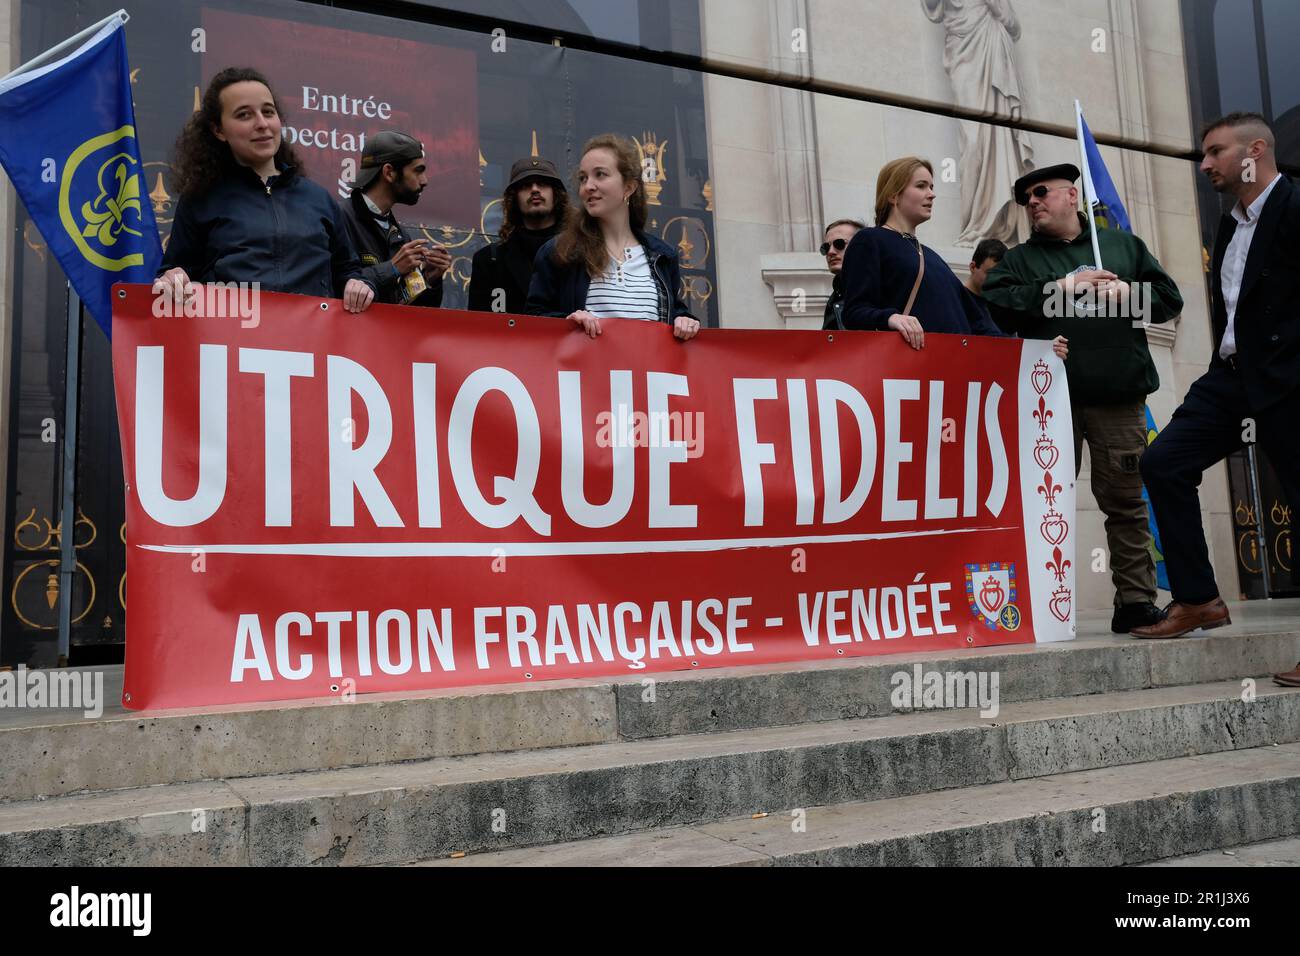 Les royalisttes d'action française ont été défilés dans Paris et ont été déplacés d'une gerbe au pied de la statue de Jeanne d'Arc, en public à bas-la-république Banque D'Images